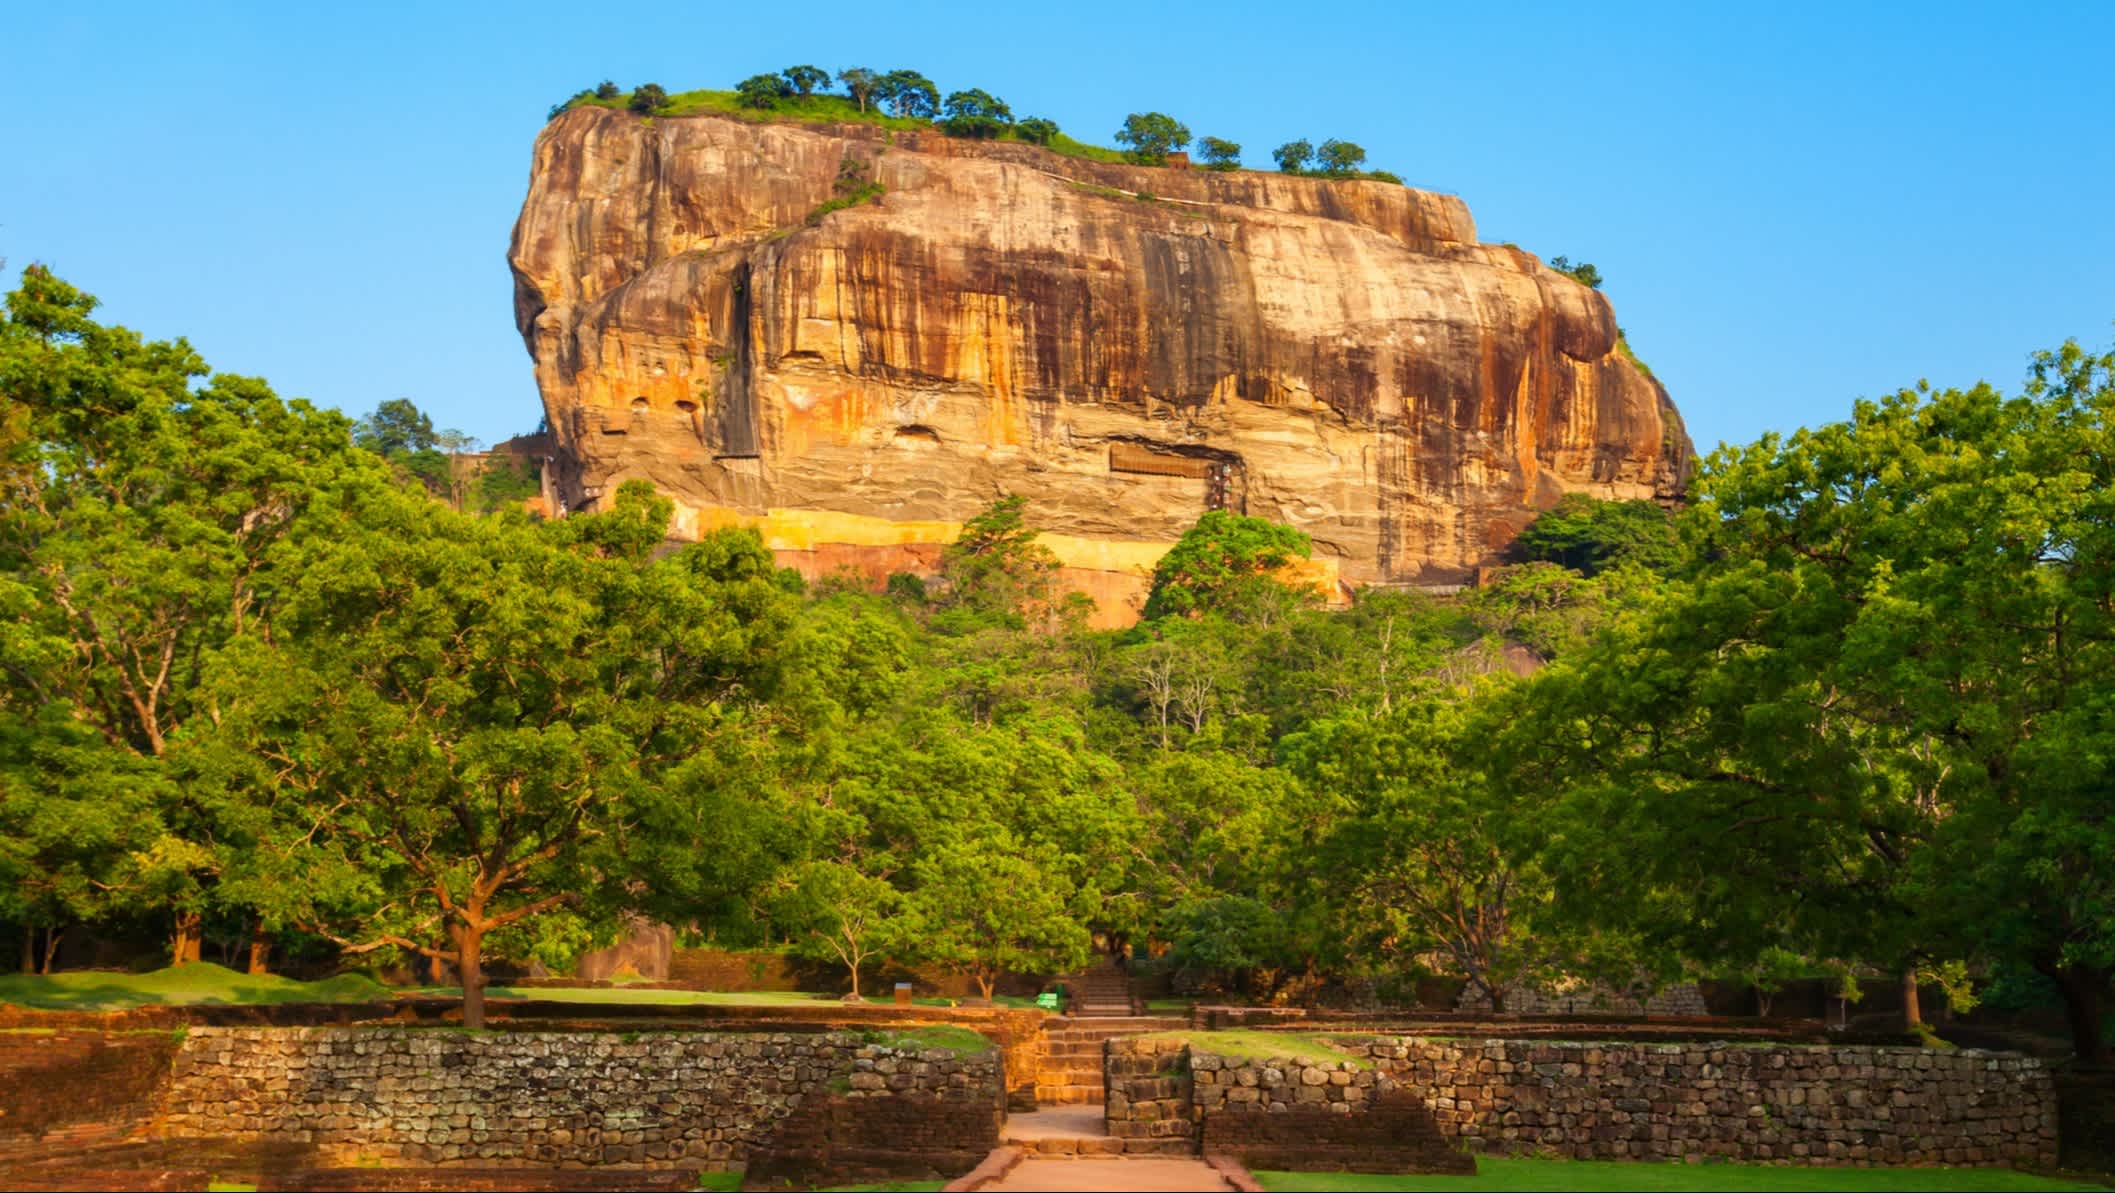 Felsenfestung Sigiriya in Sri Lanka bei Sonnenschein